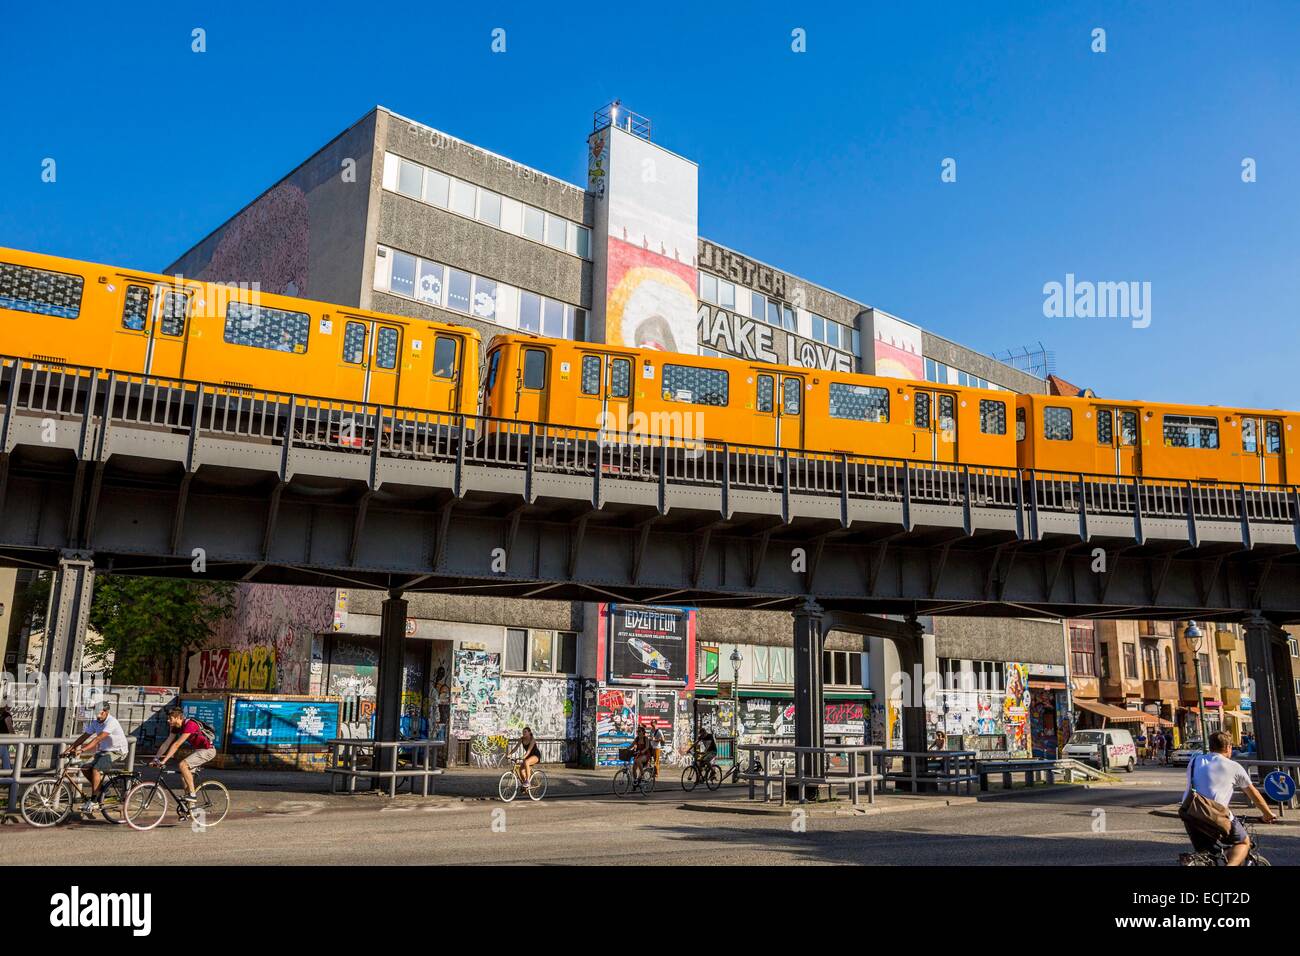 Alemania, Berlín, Berlín oriental distrito Kreuzberg, metro pasando una fachada pintada de un edificio Tag Falckensteinstrasse Foto de stock